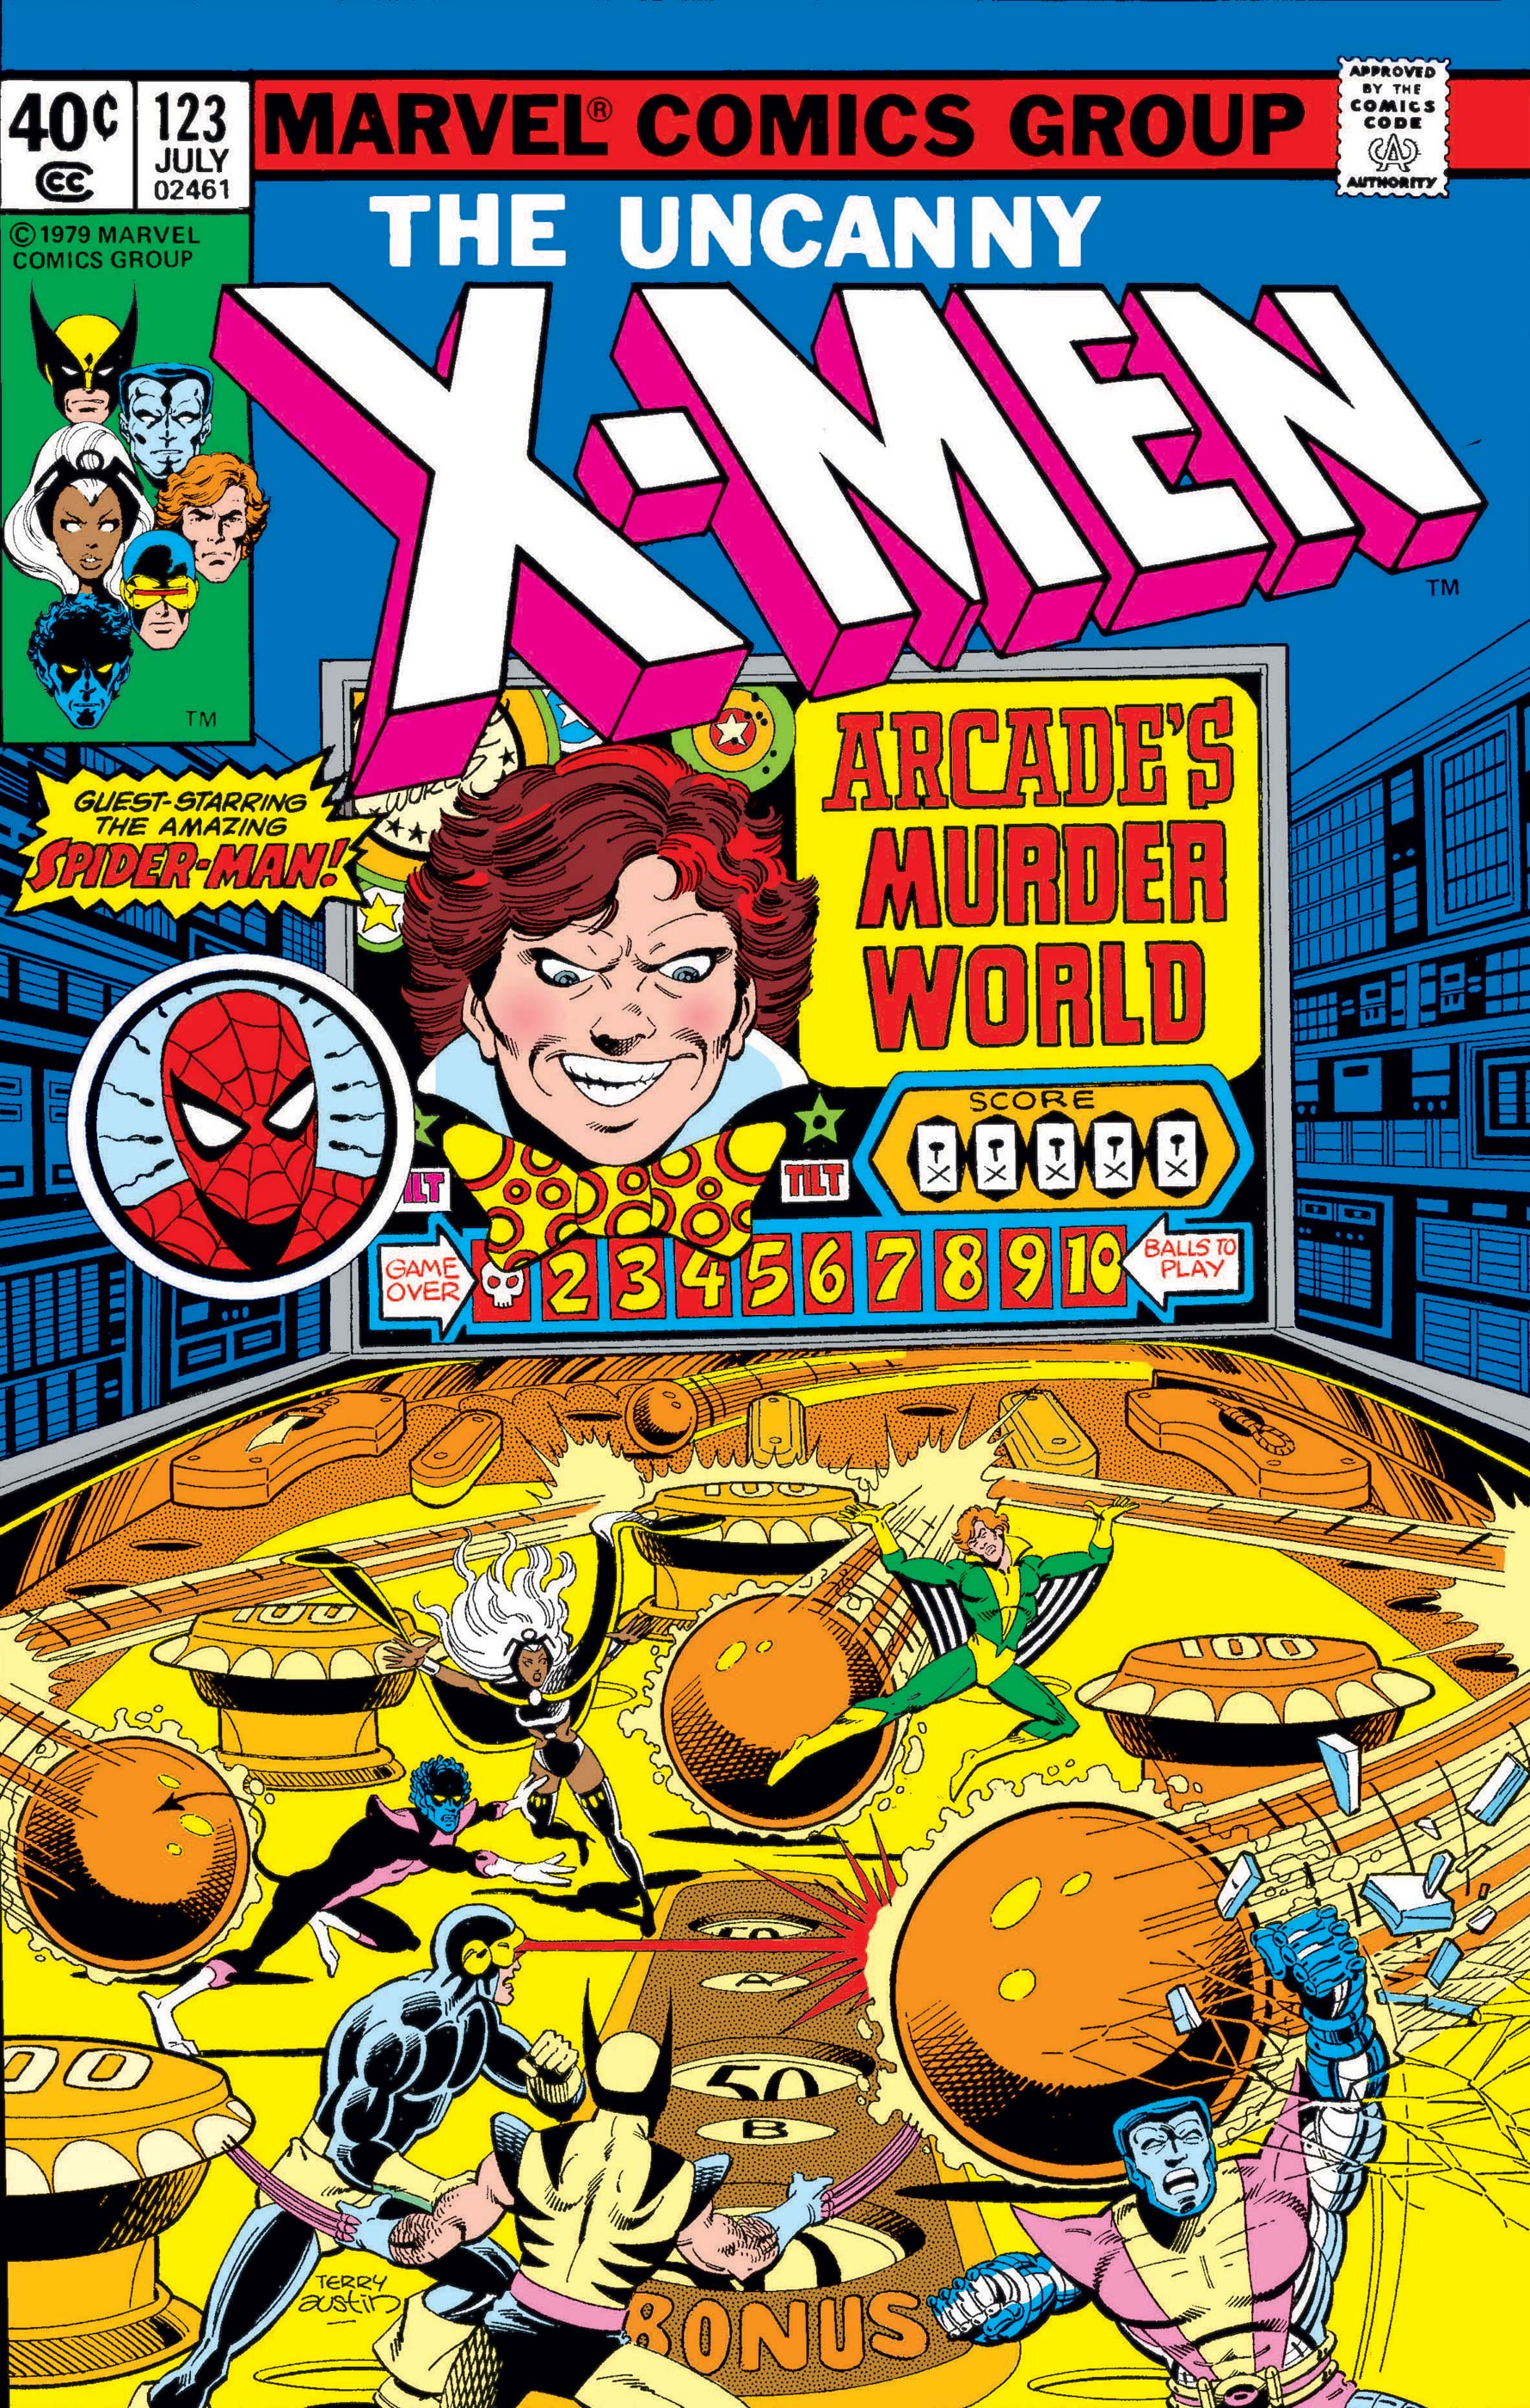 The Uncanny X-Men #123